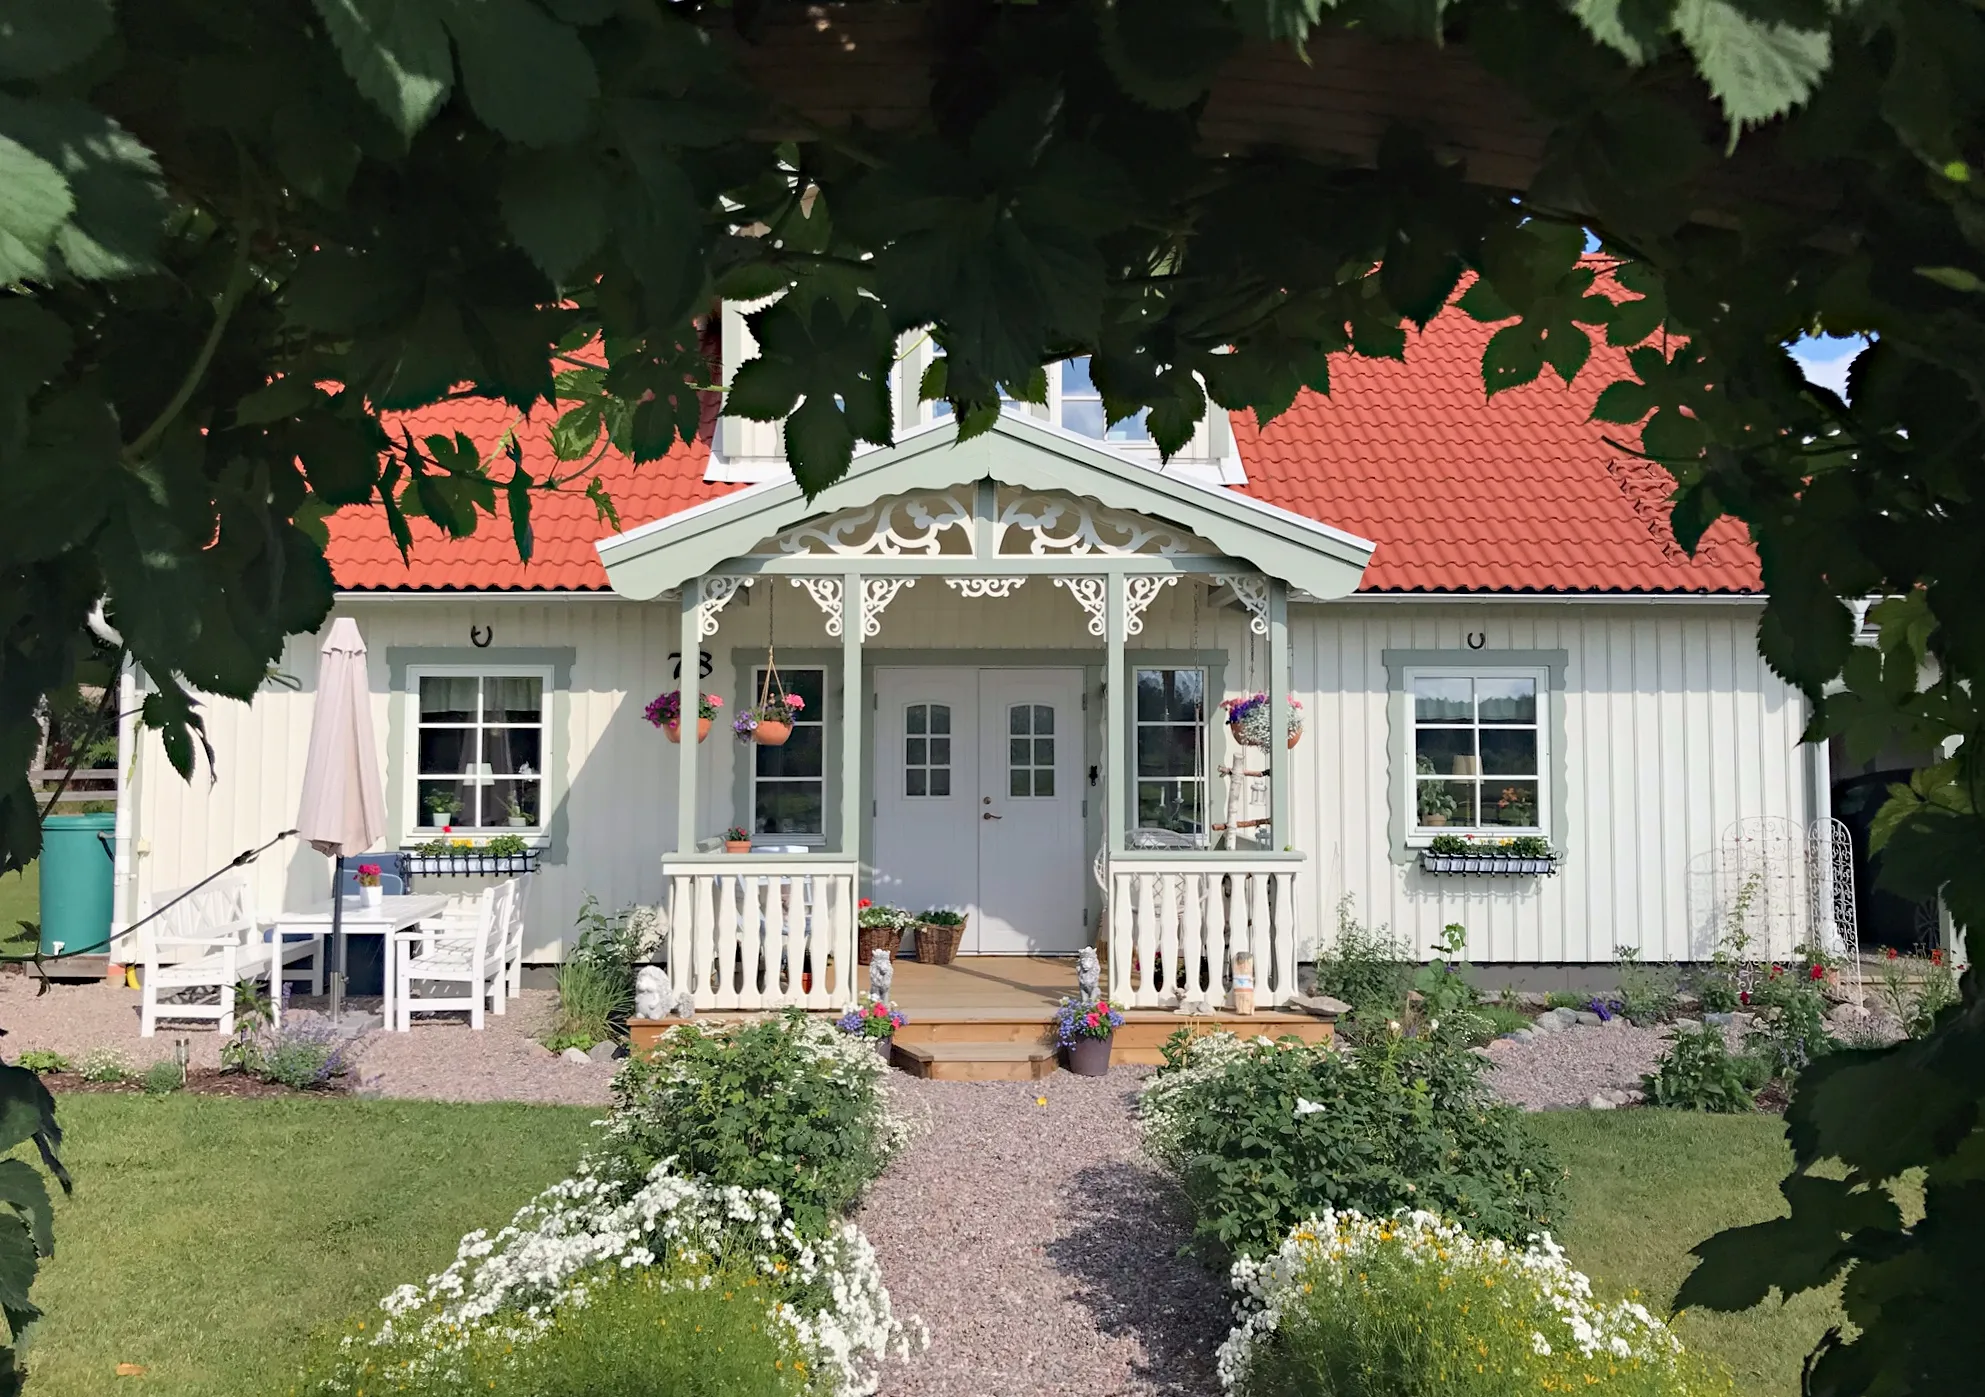 Eine klassische grüne Veranda mit der Holzkonsole 018 von Gaveldekor. - Eine Veranda, inspiriert vom Jahrhundertwechsel und dem 19. Jahrhundert - Hausdekoration und Dekoration für den Dachfirst - hergestellt in Schweden - einzigartiges Design.